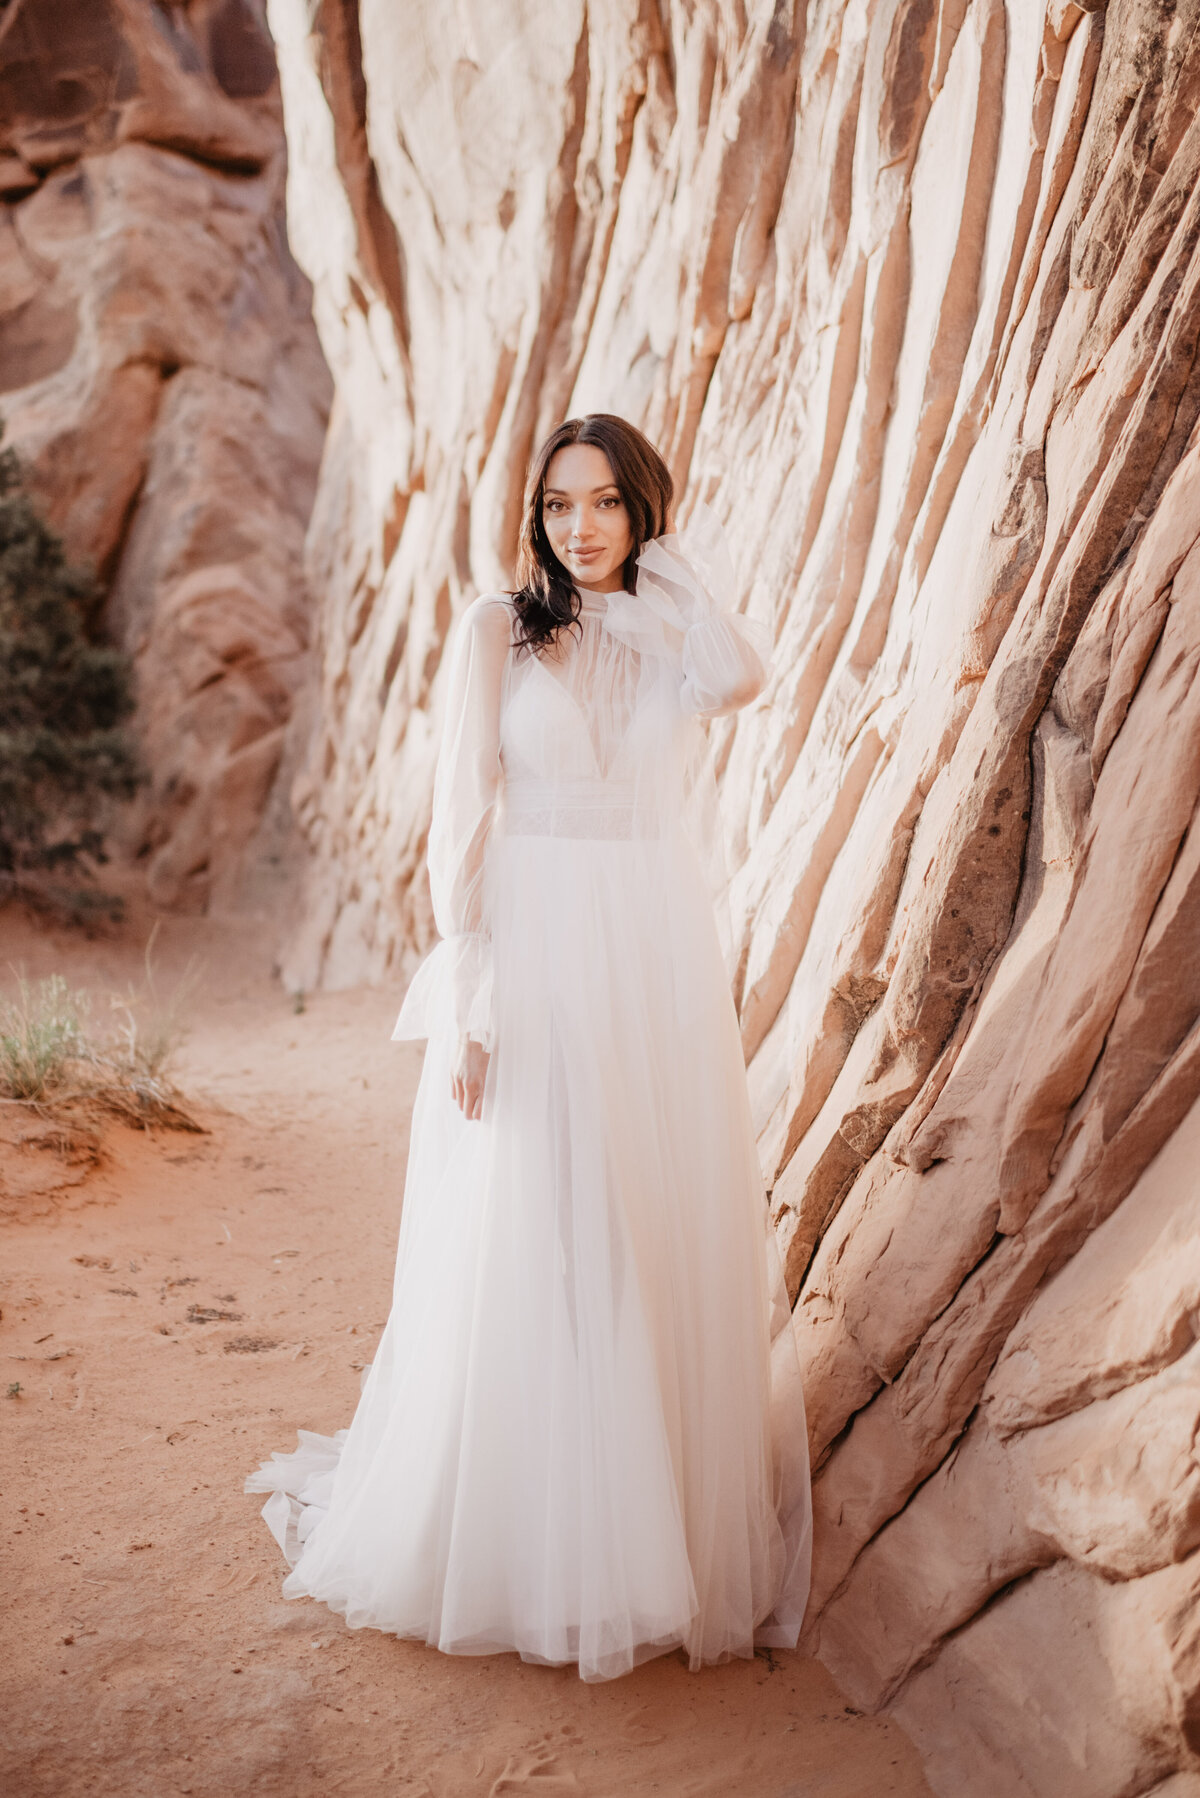 Utah elopement photographer captures bride wearing trendy wedding dress